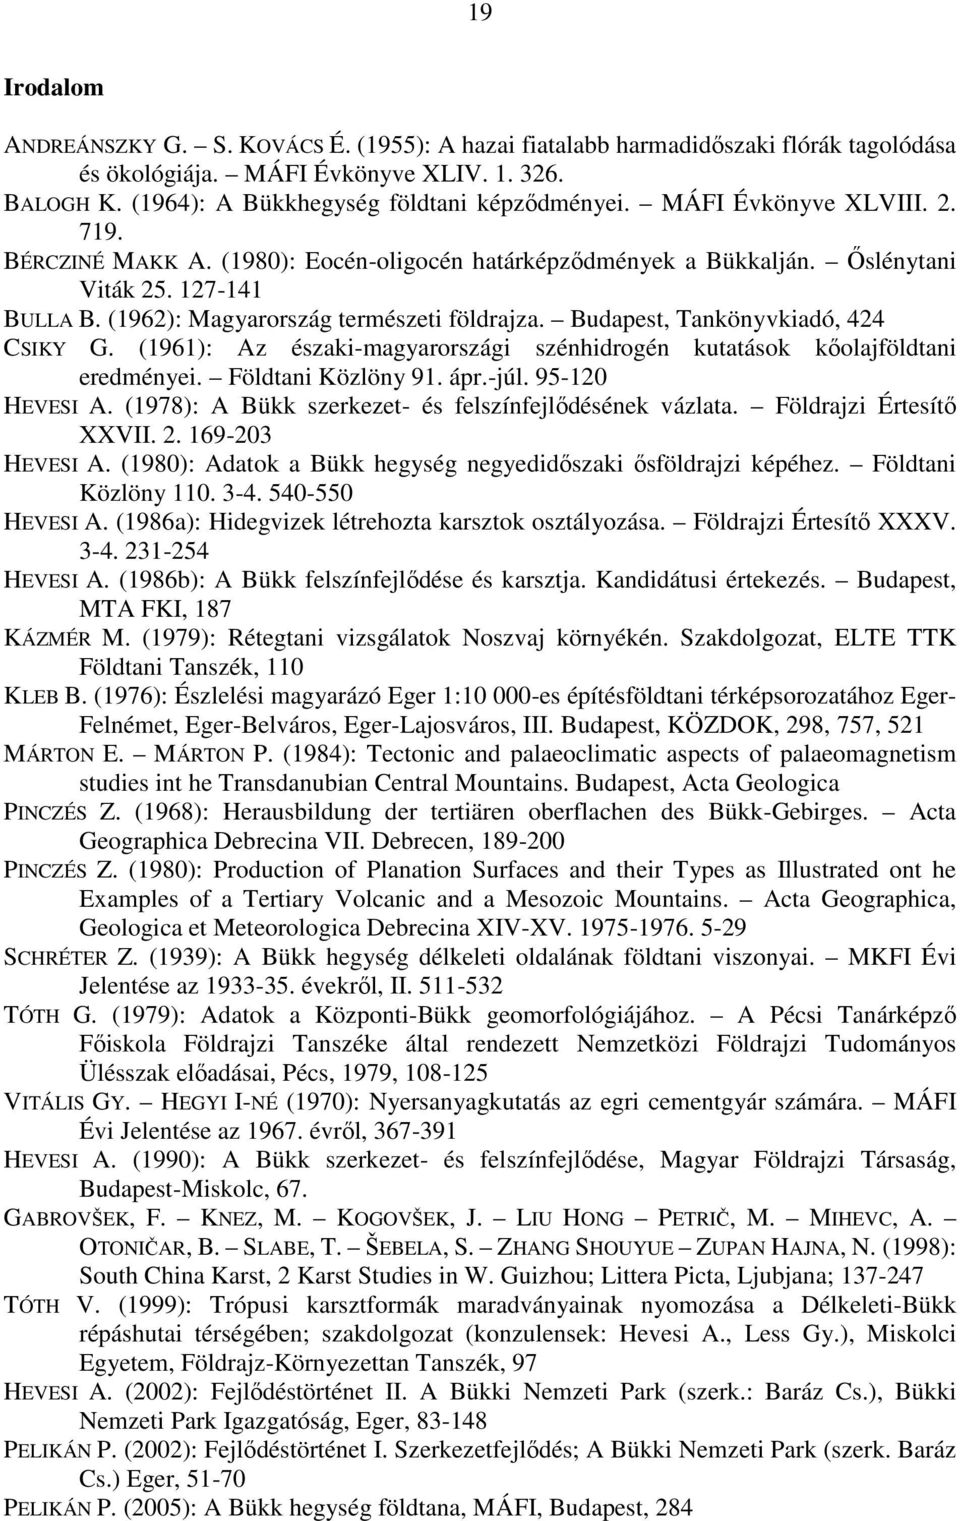 Budapest, Tankönyvkiadó, 424 CSIKY G. (1961): Az északi-magyarországi szénhidrogén kutatások kőolajföldtani eredményei. Földtani Közlöny 91. ápr.-júl. 95-120 HEVESI A.